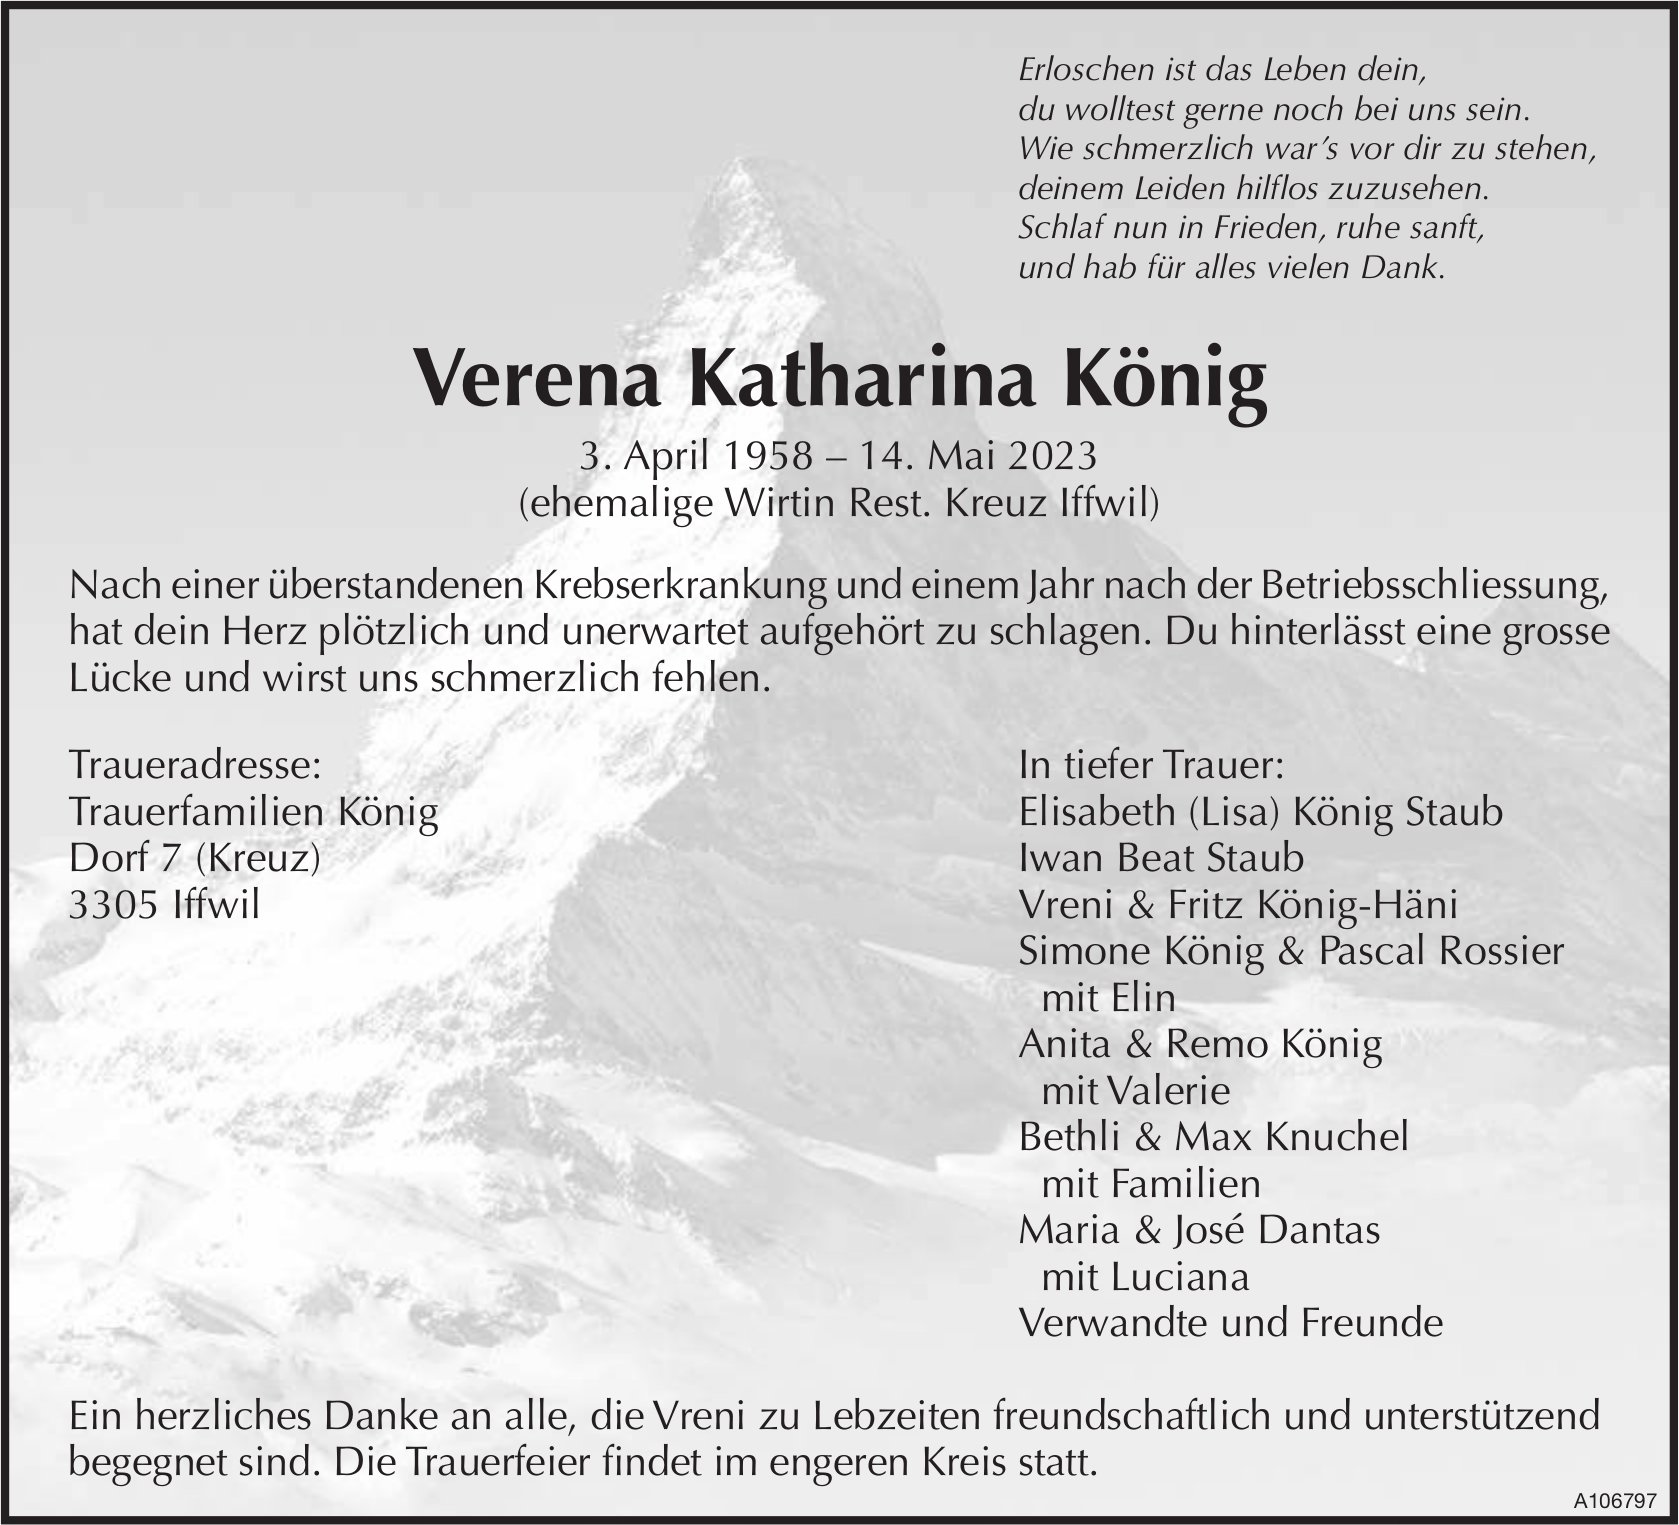 Verena Katharina König, Mai 2023 / TA